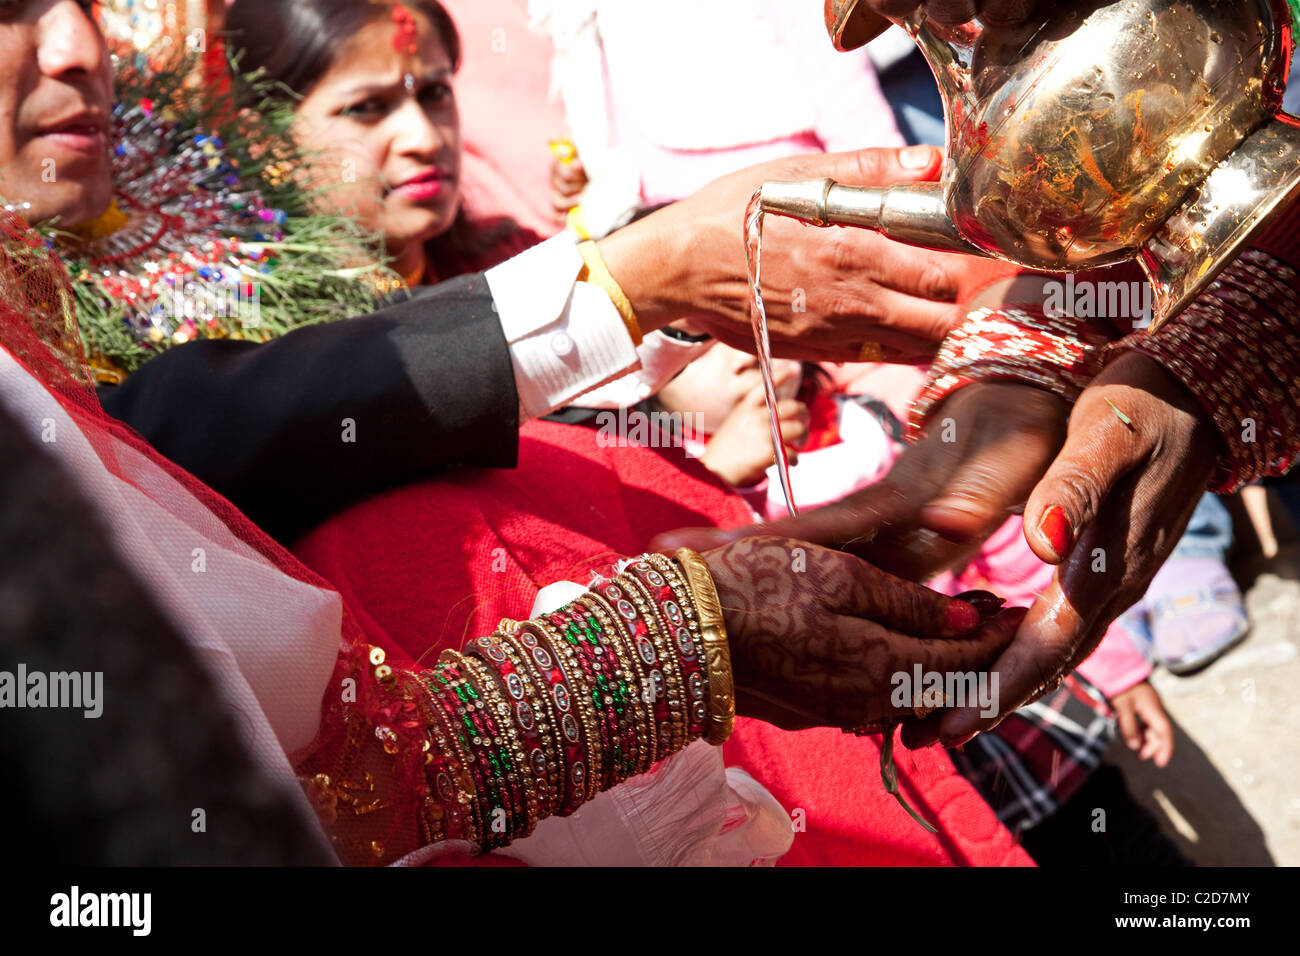 In prossimità di una donna mano con henna tattoo e molti indiani tradizionali braccialetti. Il Nepal, Asia Foto Stock